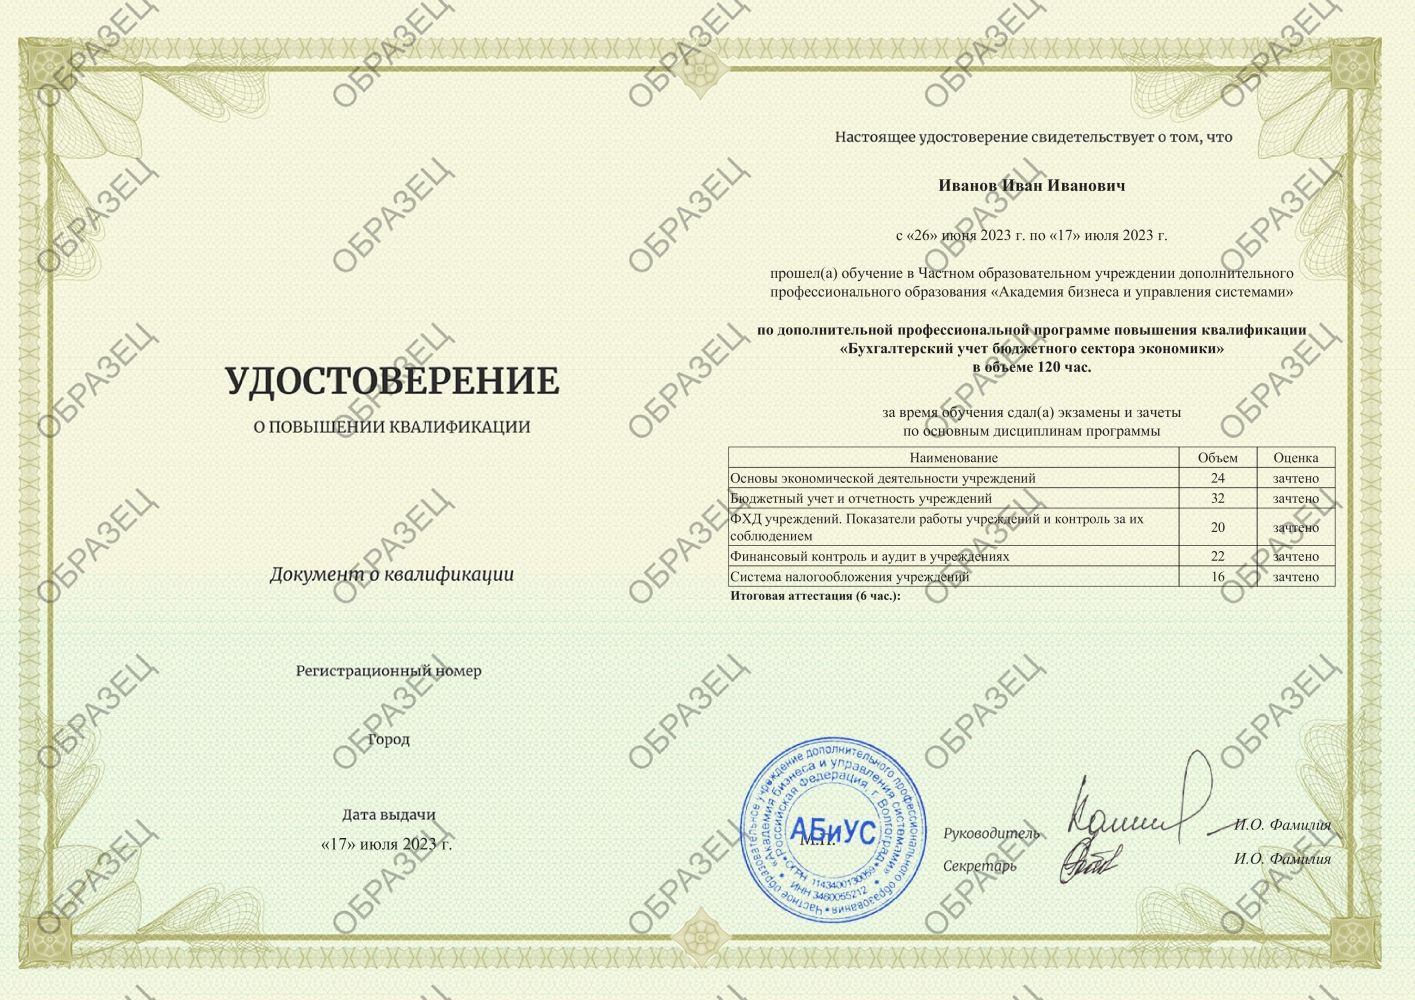 Удостоверение Бухгалтерский учет бюджетного сектора экономики 120 часов 9875 руб.